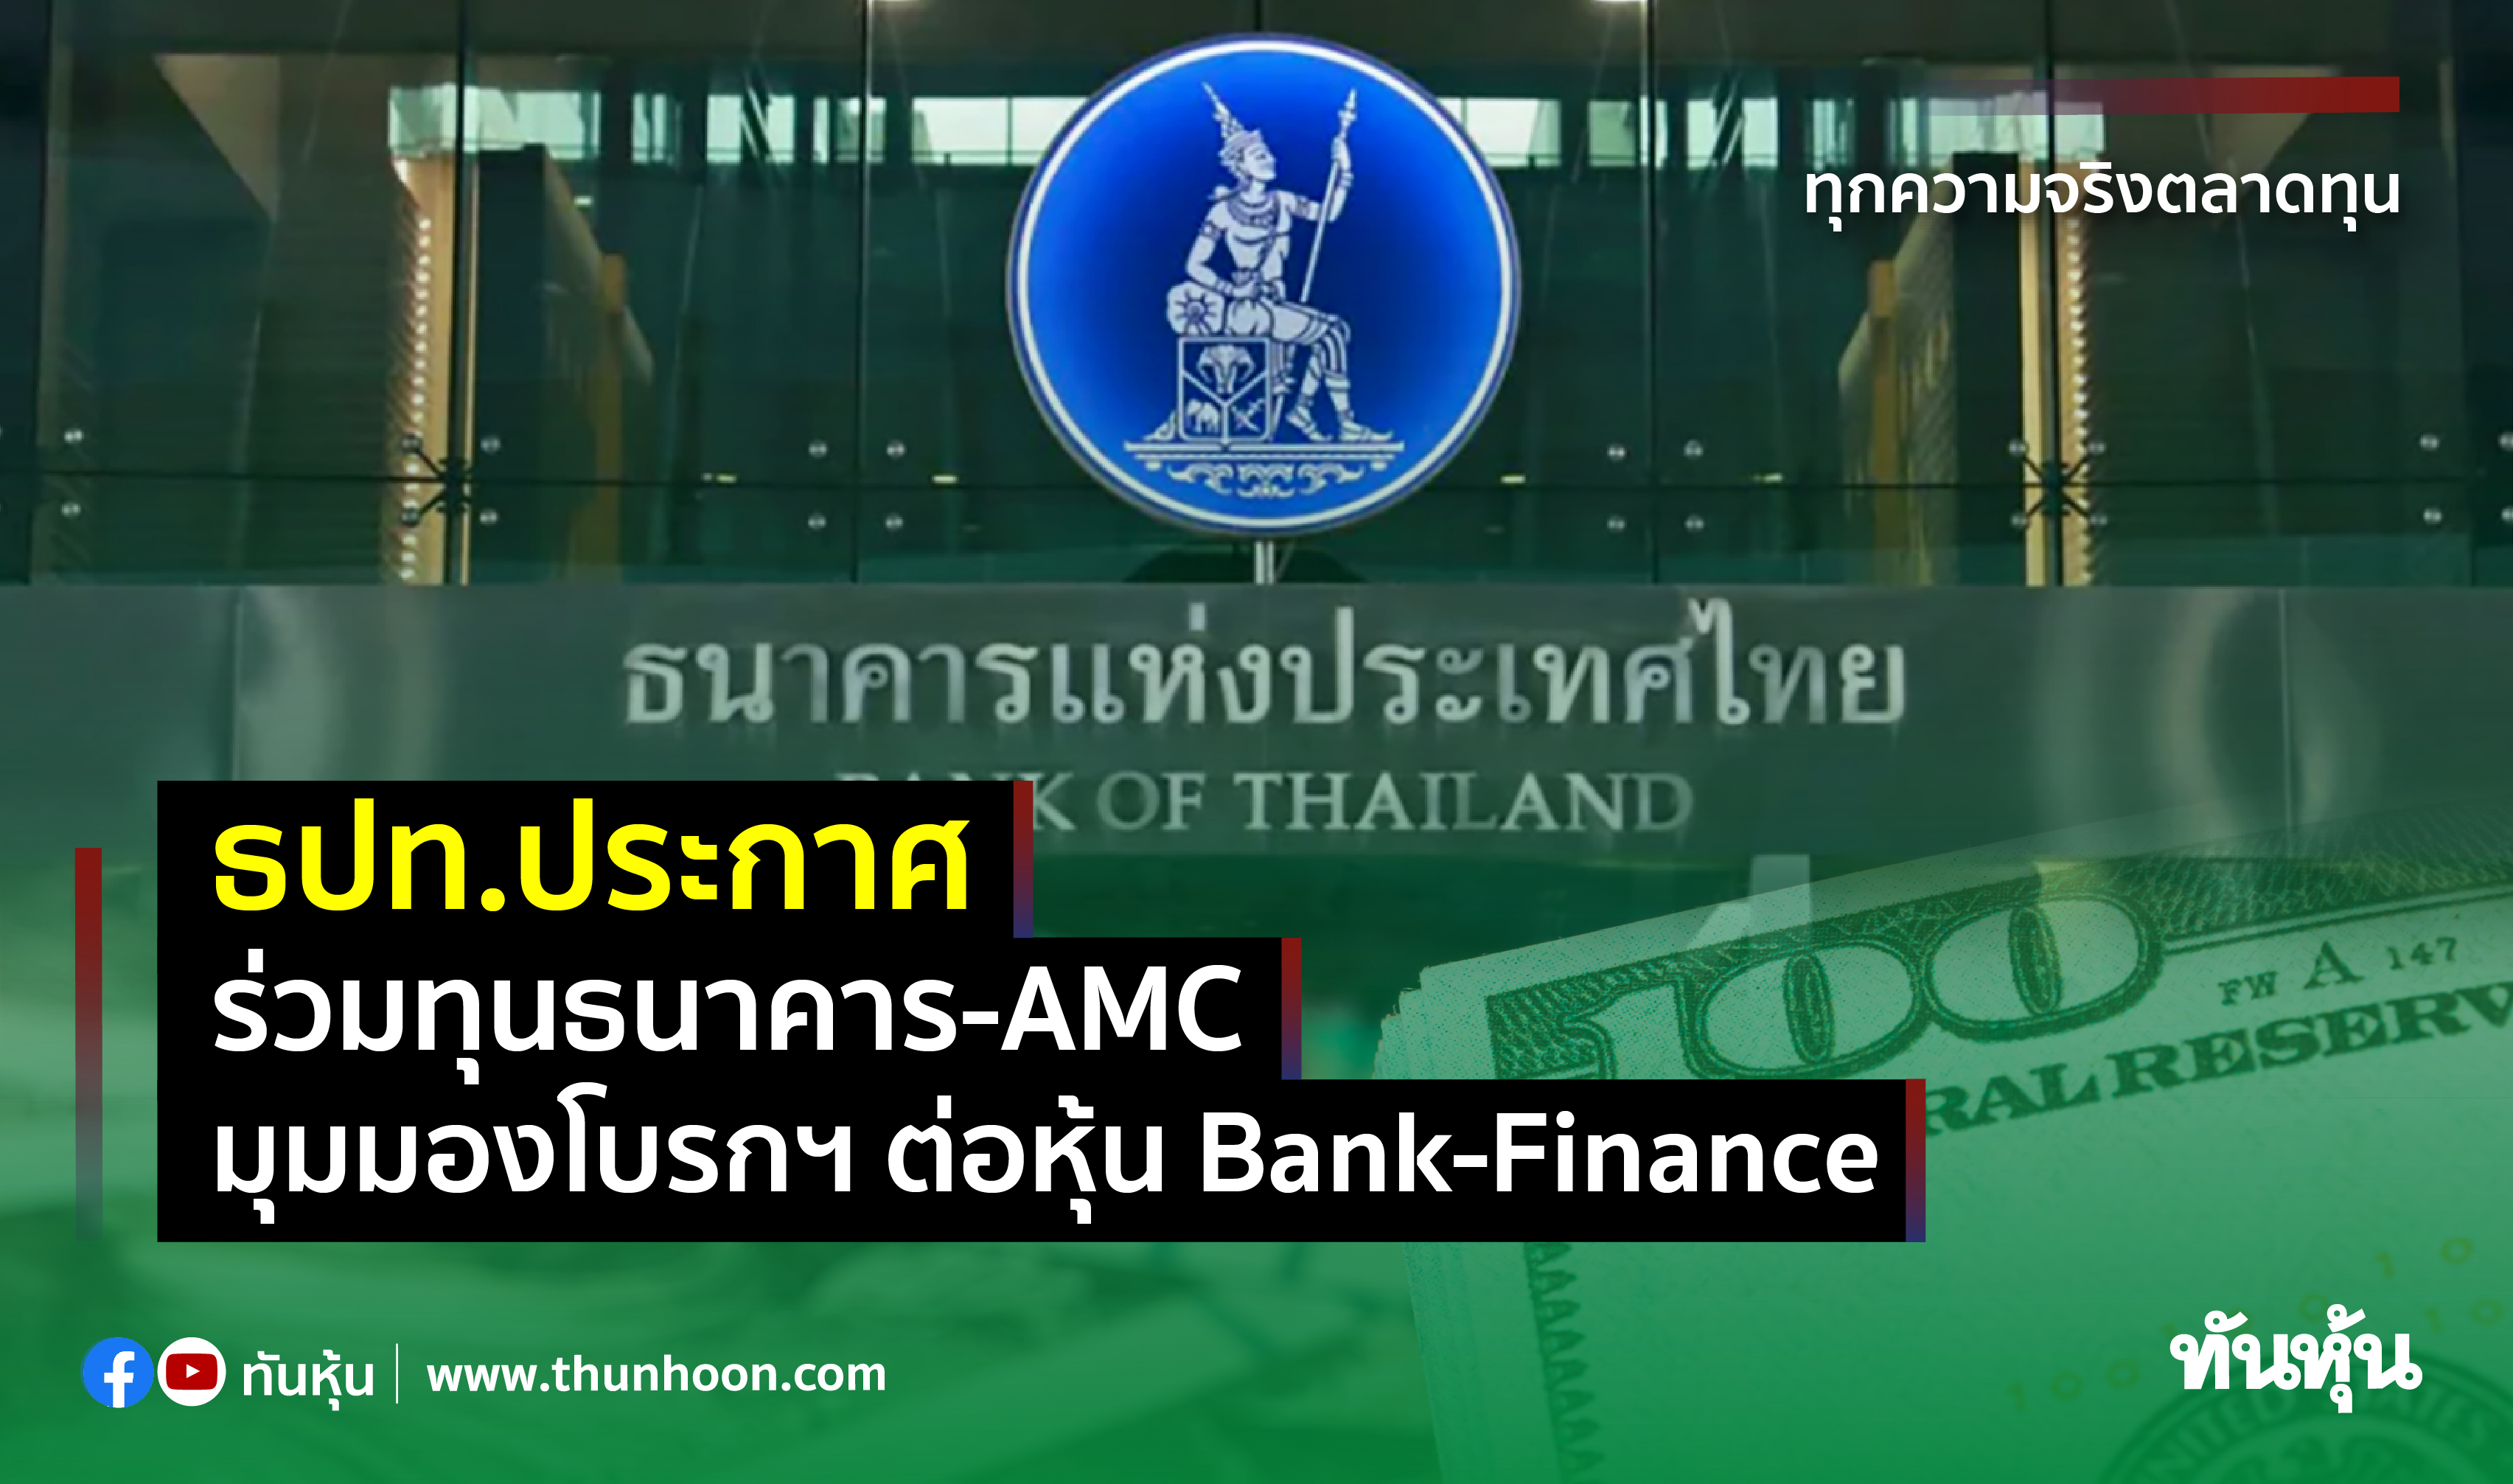 ธปท.ประกาศร่วมทุนธนาคาร-AMC  มุมมองโบรกฯ ต่อหุ้น Bank-Finance